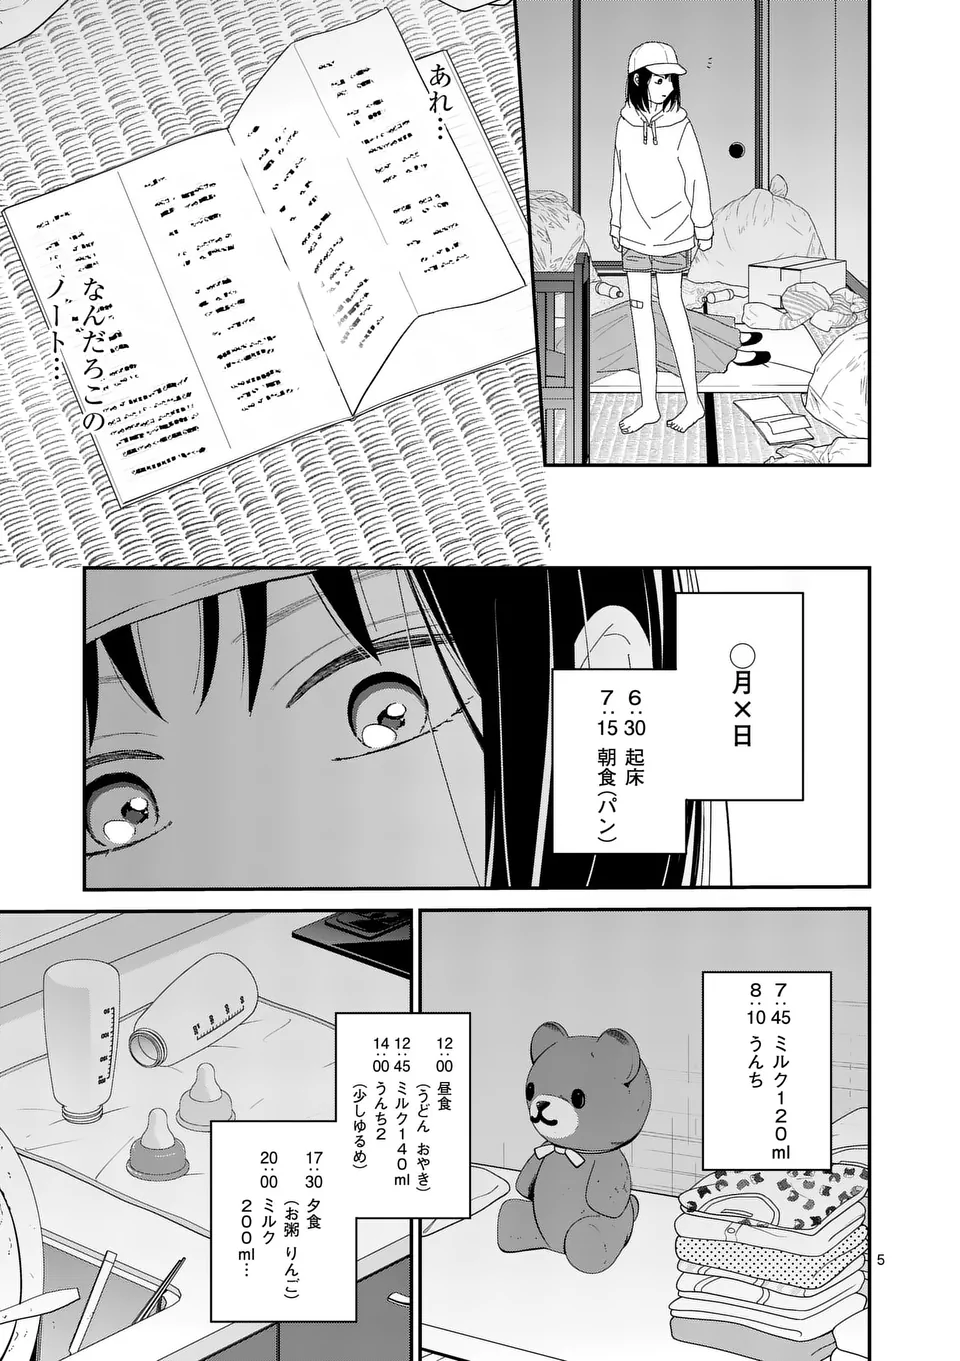 Atashi wo Ijimeta Kanojo no Ko - Chapter 4.1 - Page 5